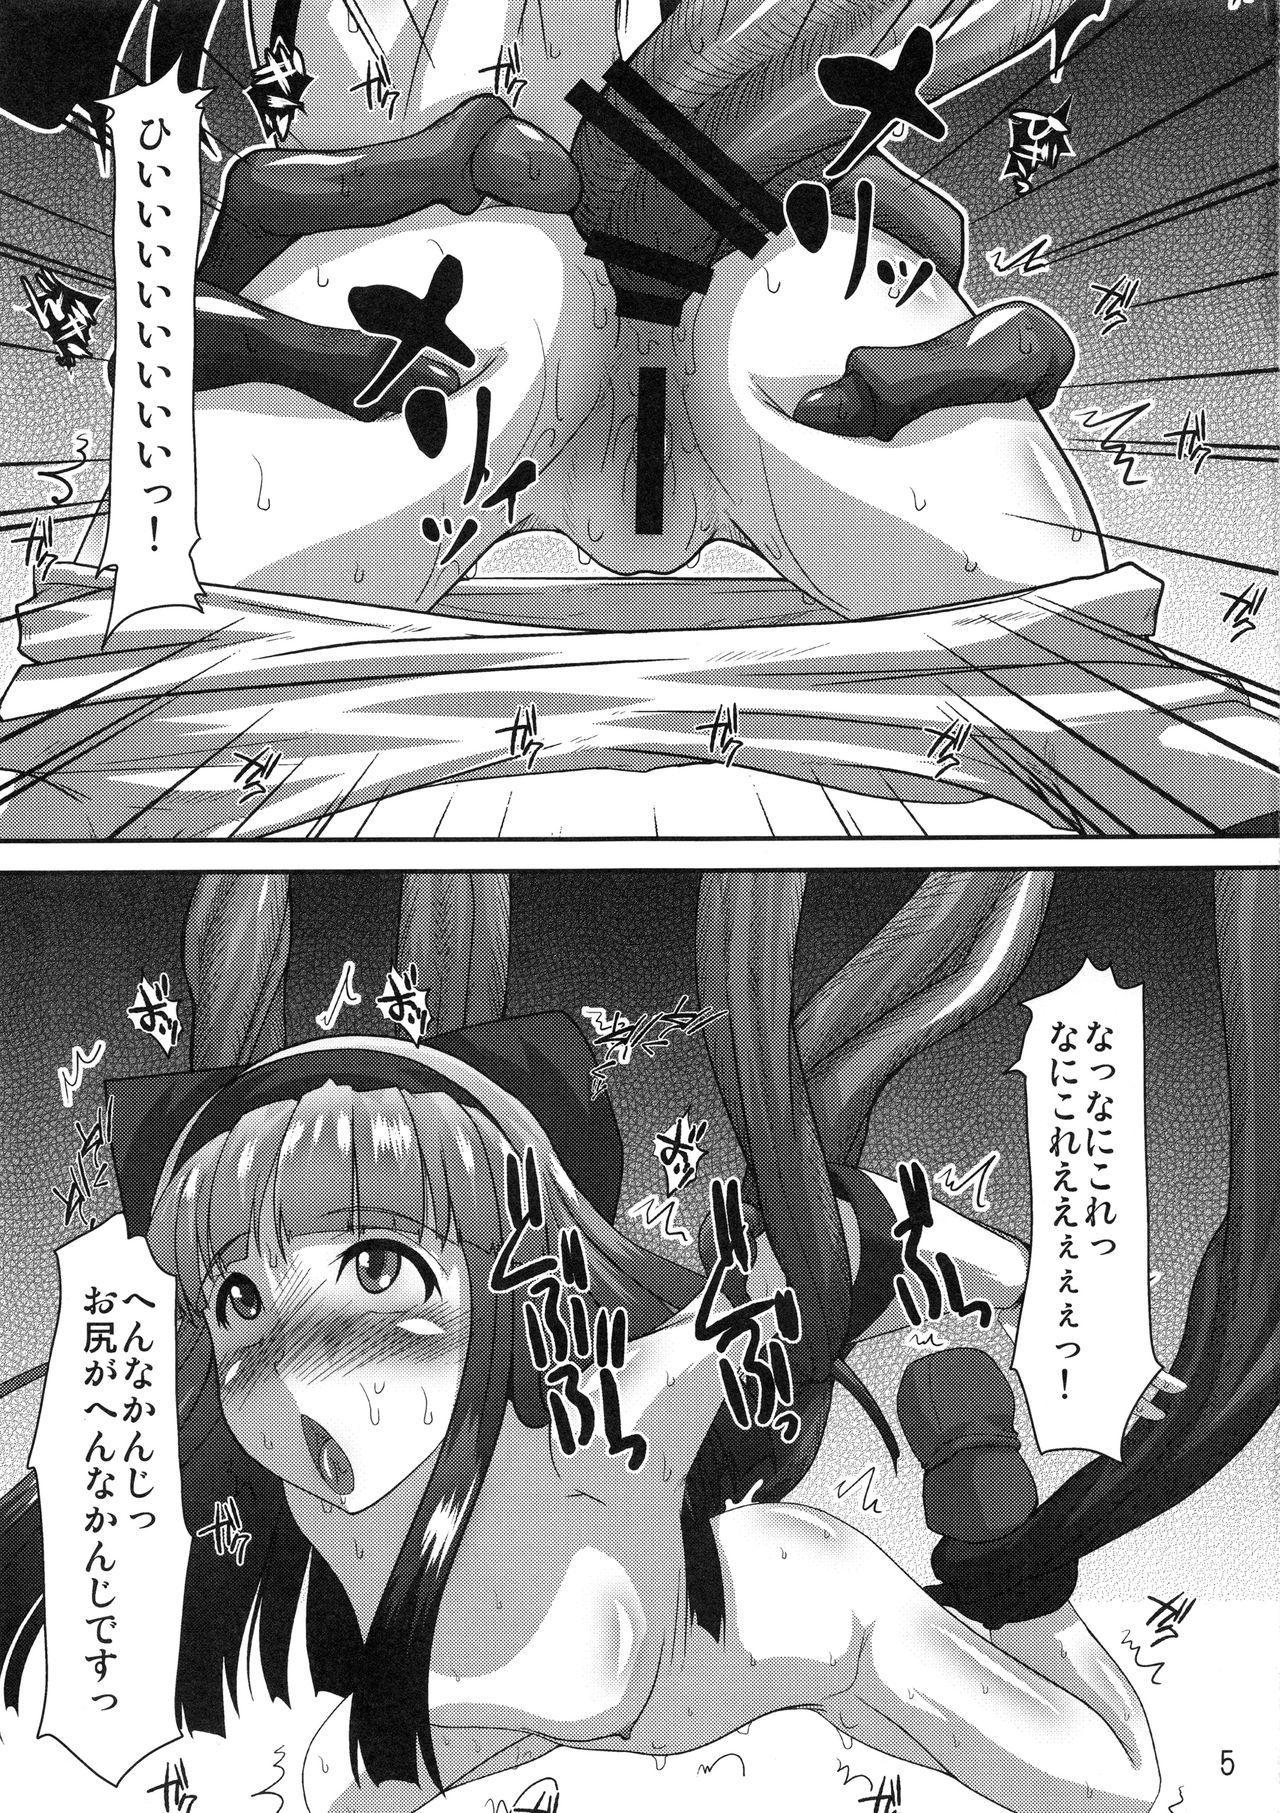 Cojiendo Shokushu vs Nakoruru - Samurai spirits Bubble Butt - Page 4